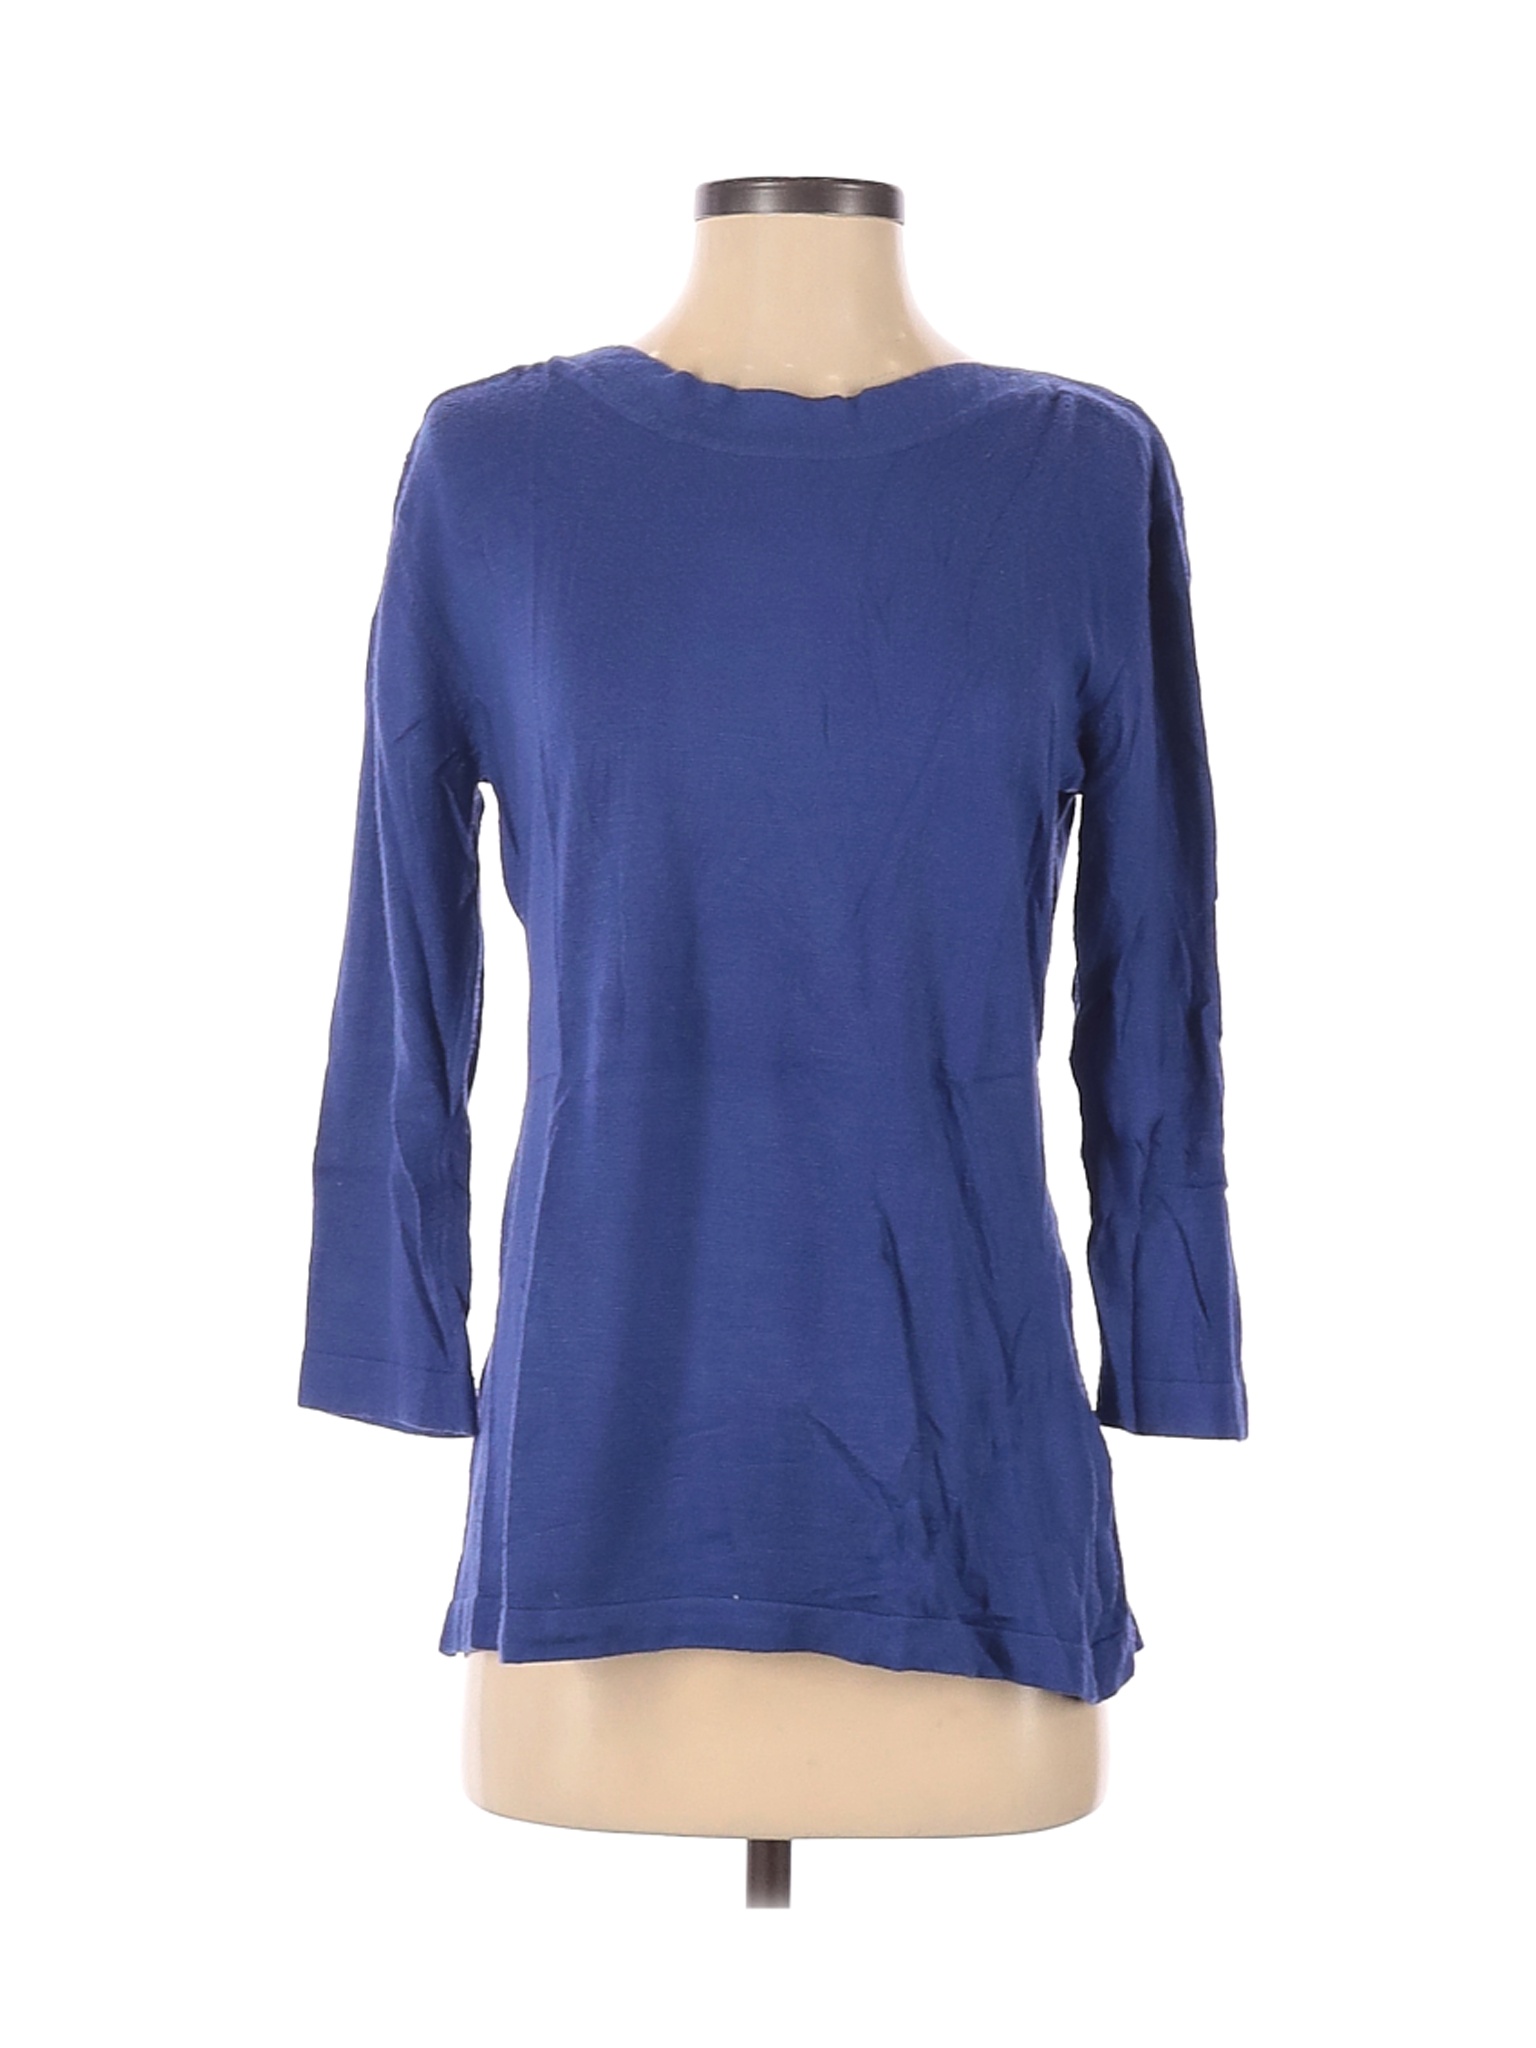 Lulu-B Women Blue Pullover Sweater S | eBay